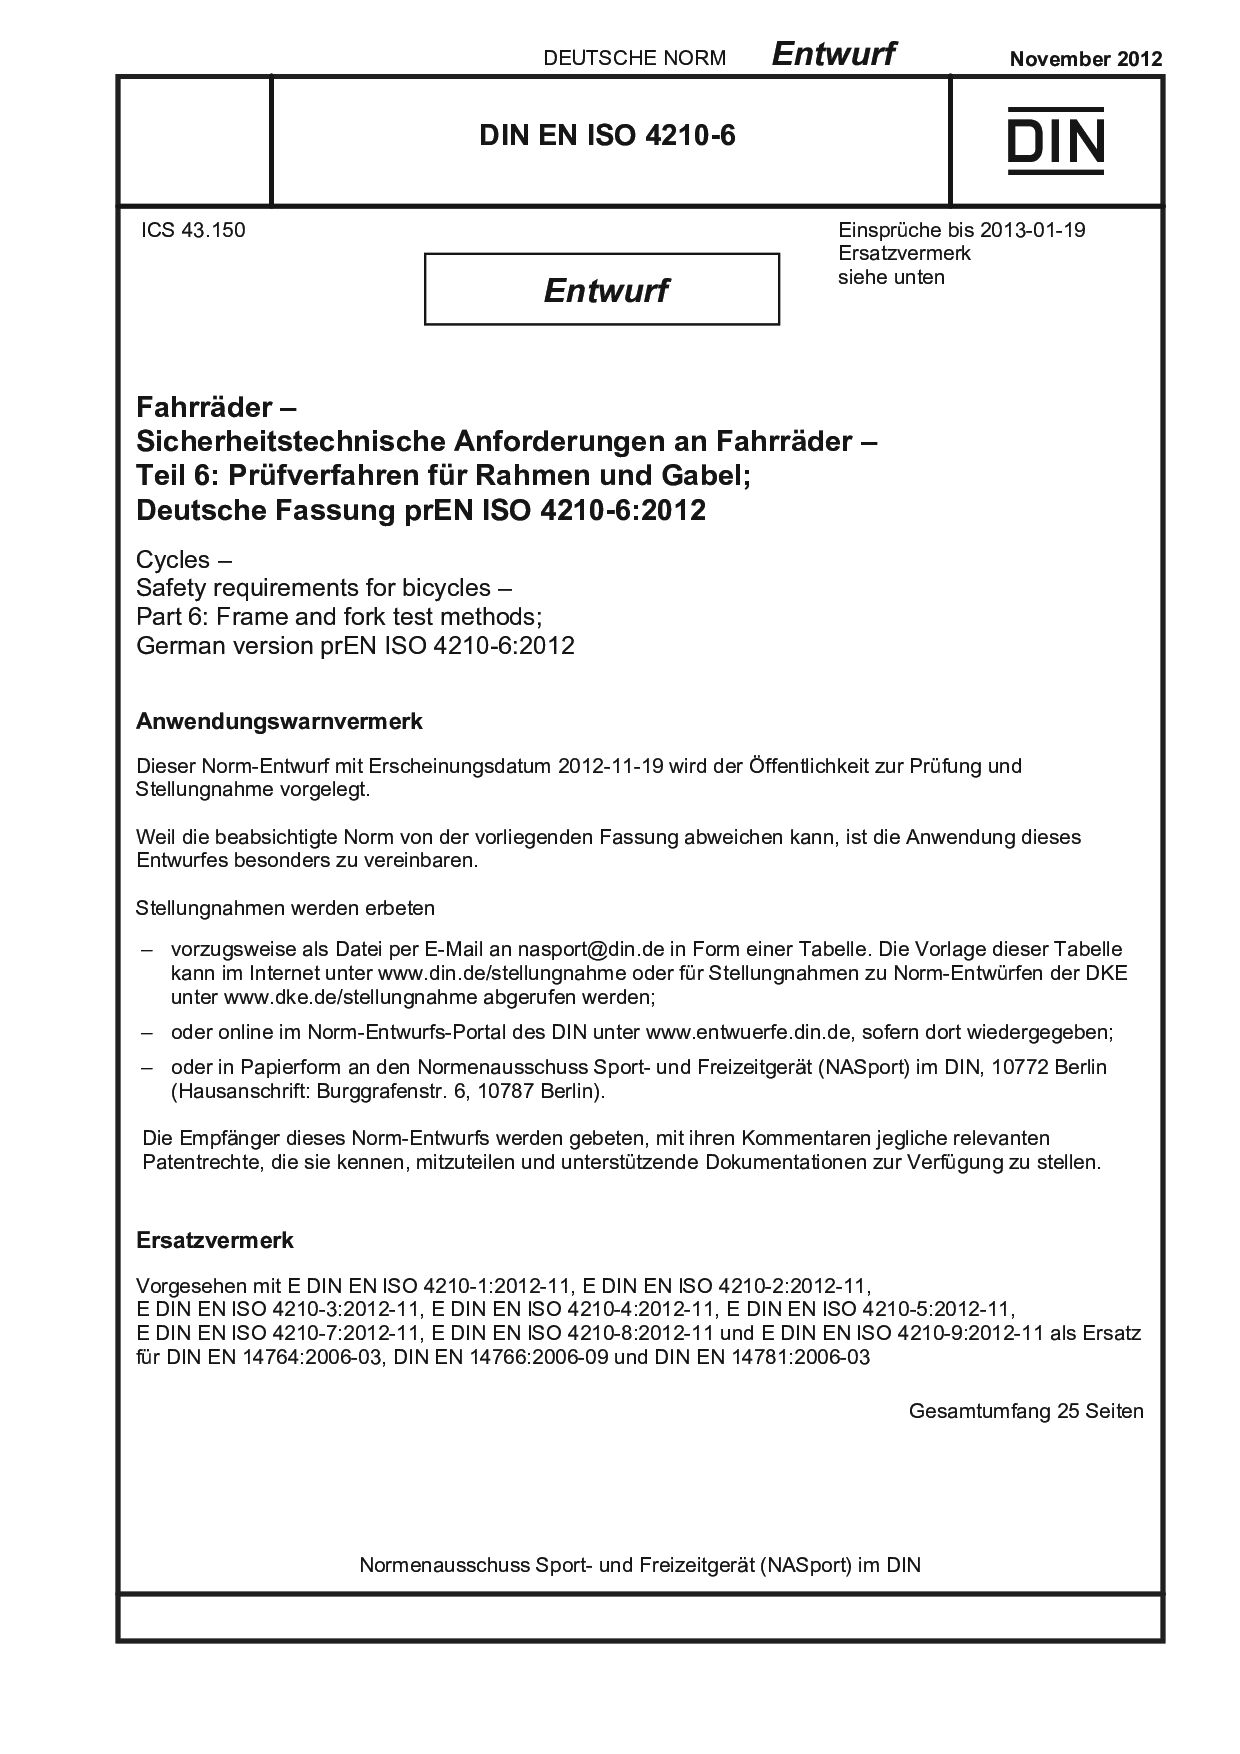 DIN EN ISO 4210-6 E:2012-11封面图